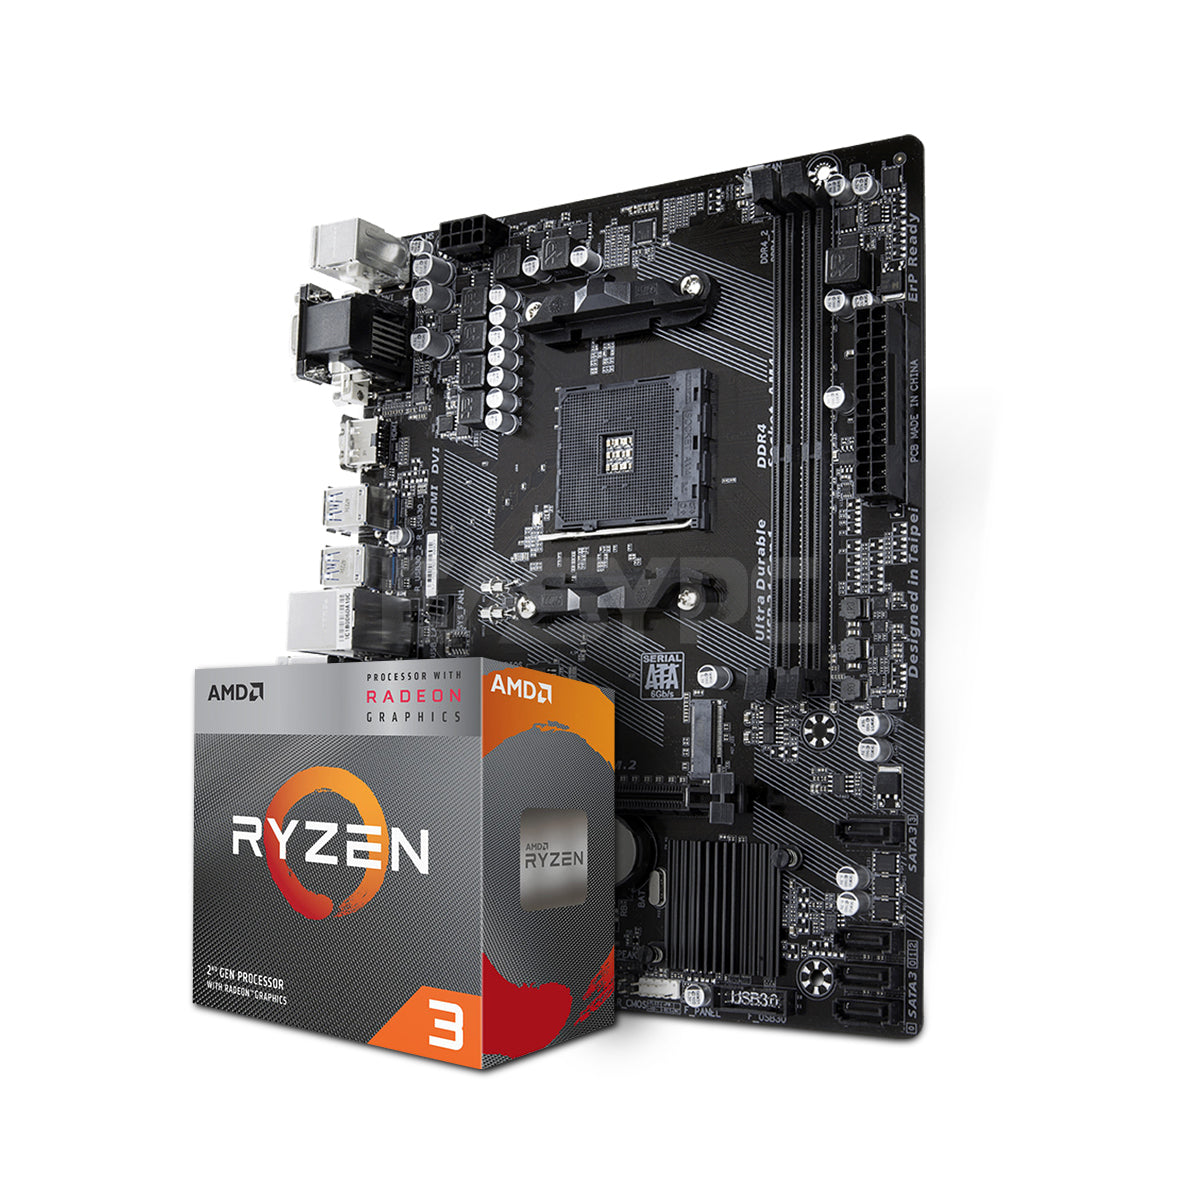 AMD Ryzen 3 3200G and Gigabyte Motherboard EasyBundle – EasyPC